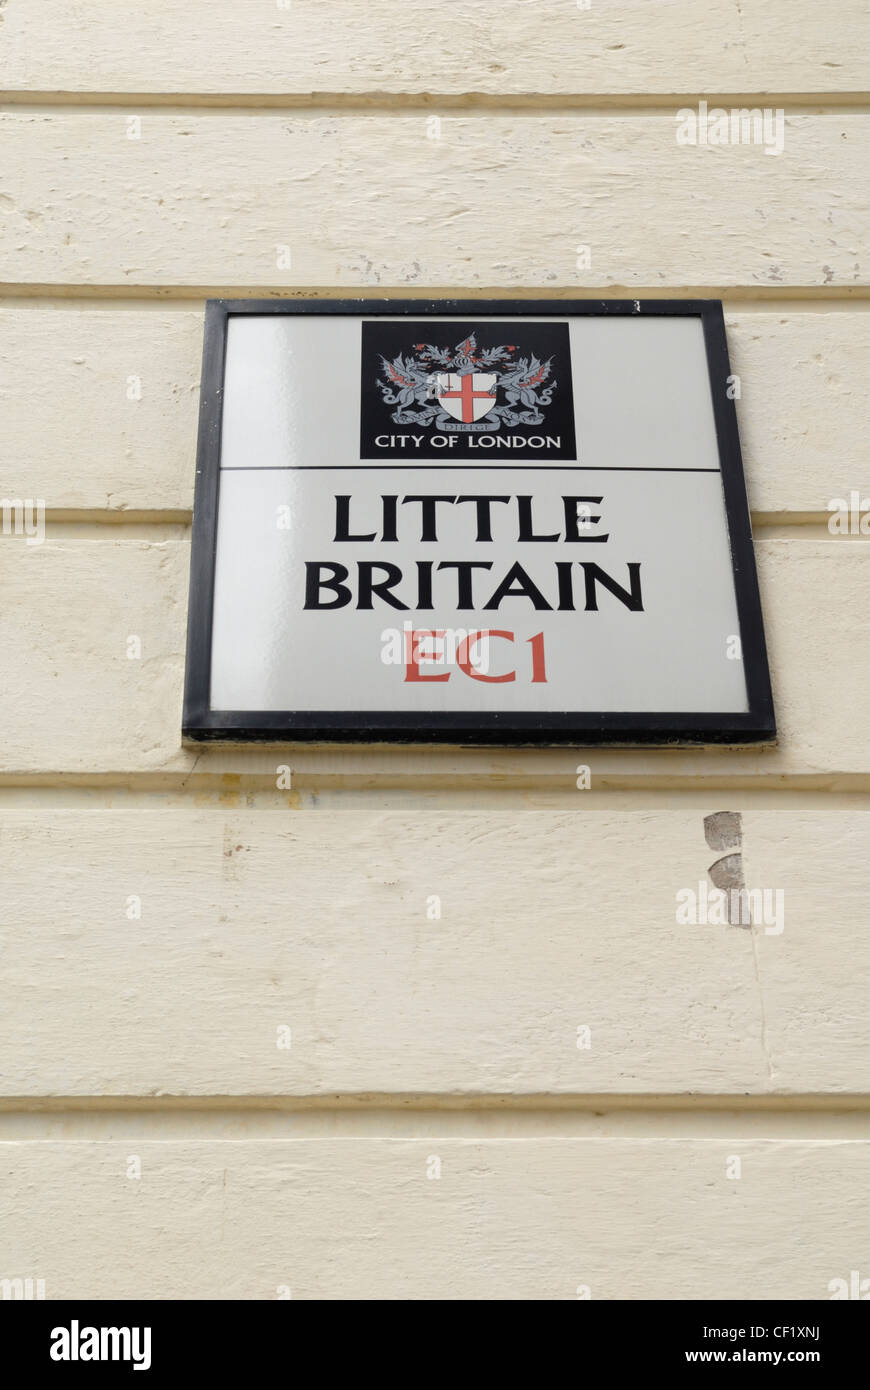 Little Britain street sign in EC1, aussi le nom d'un programme de télévision comédie populaire. Banque D'Images